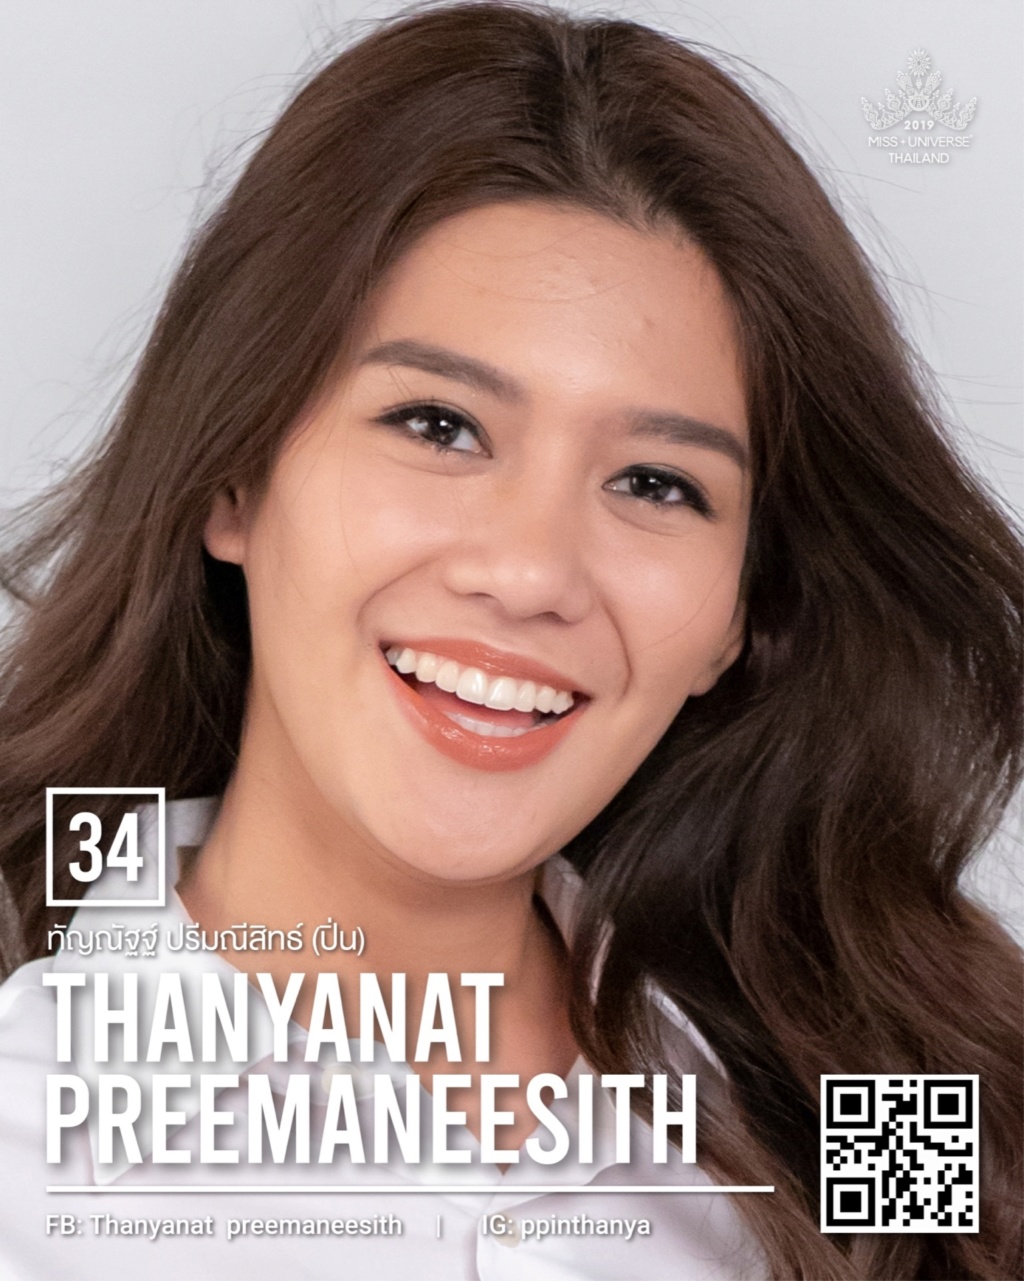 Miss Universe THAILAND 2019 - PORTRAITS!  - Page 2 11224